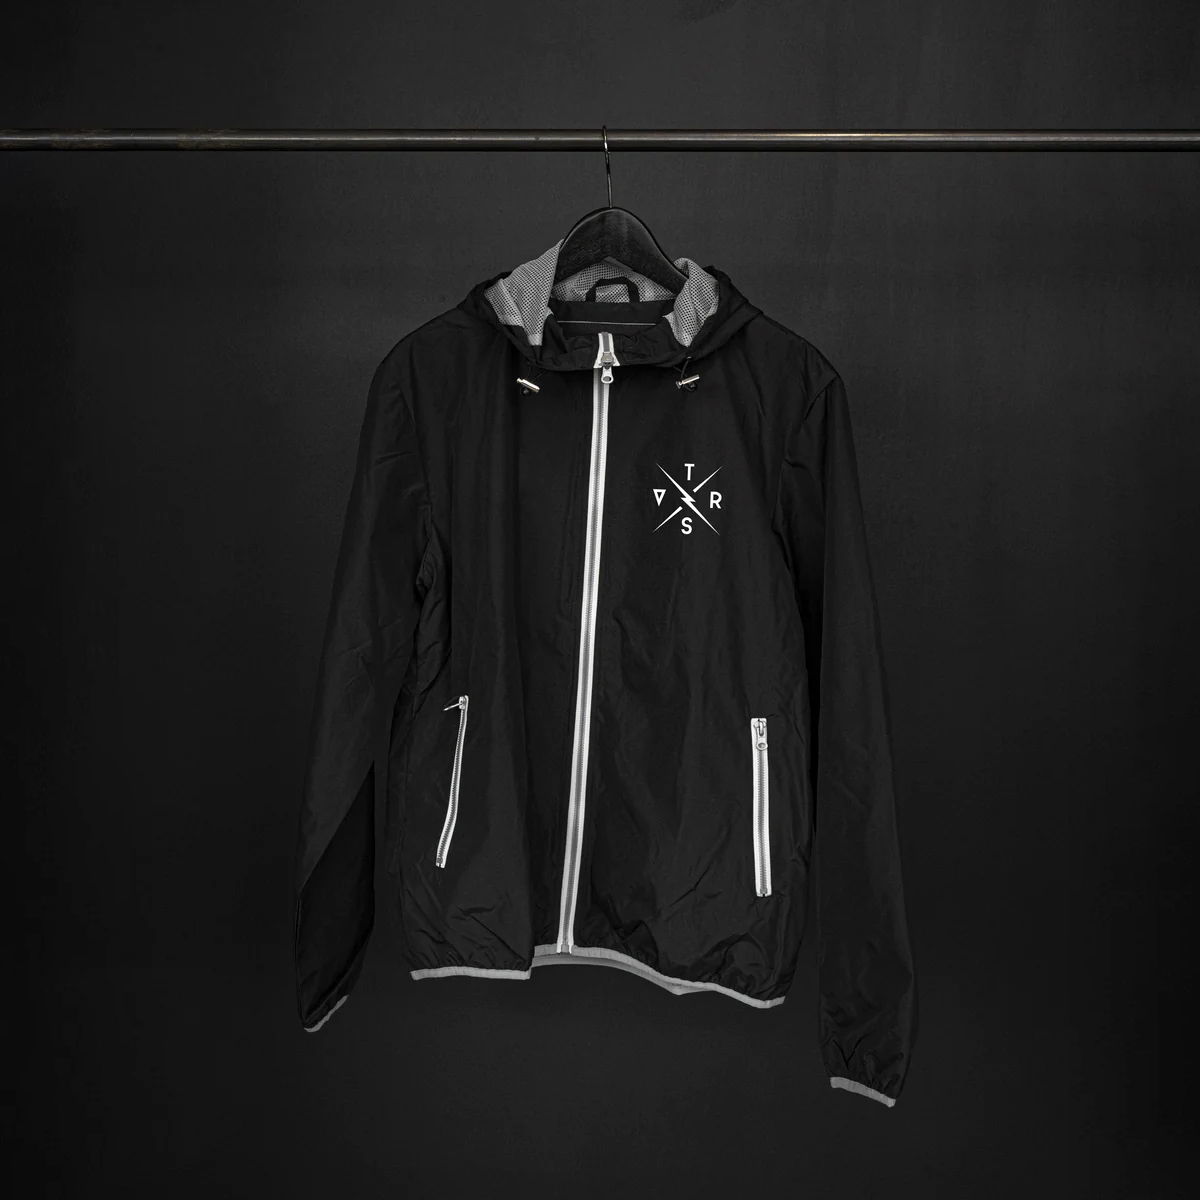 Windbreaker Legacy Windproof Jacket Black Size S